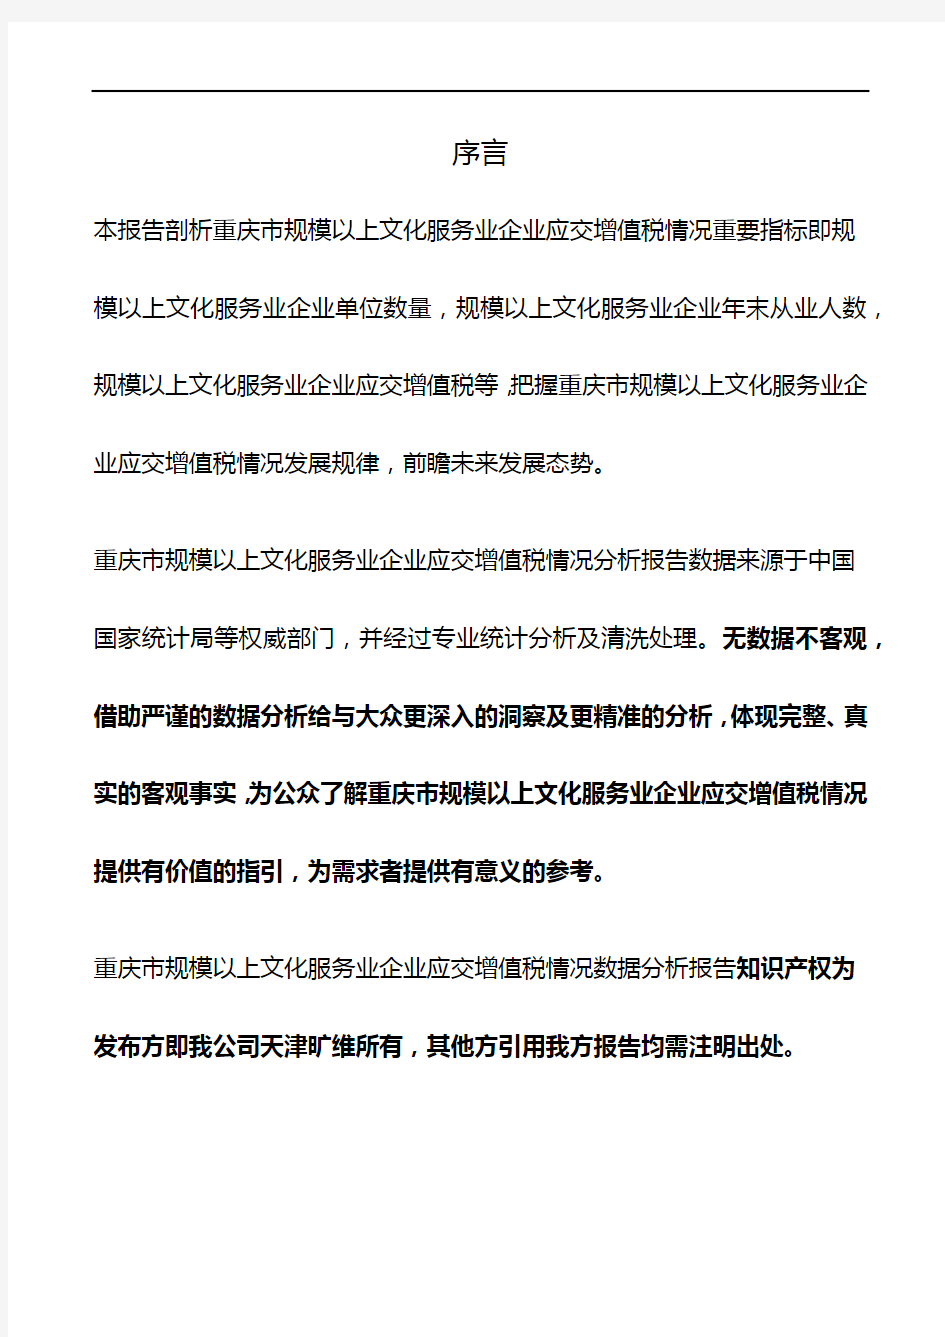 重庆市规模以上文化服务业企业应交增值税情况3年数据分析报告2019版